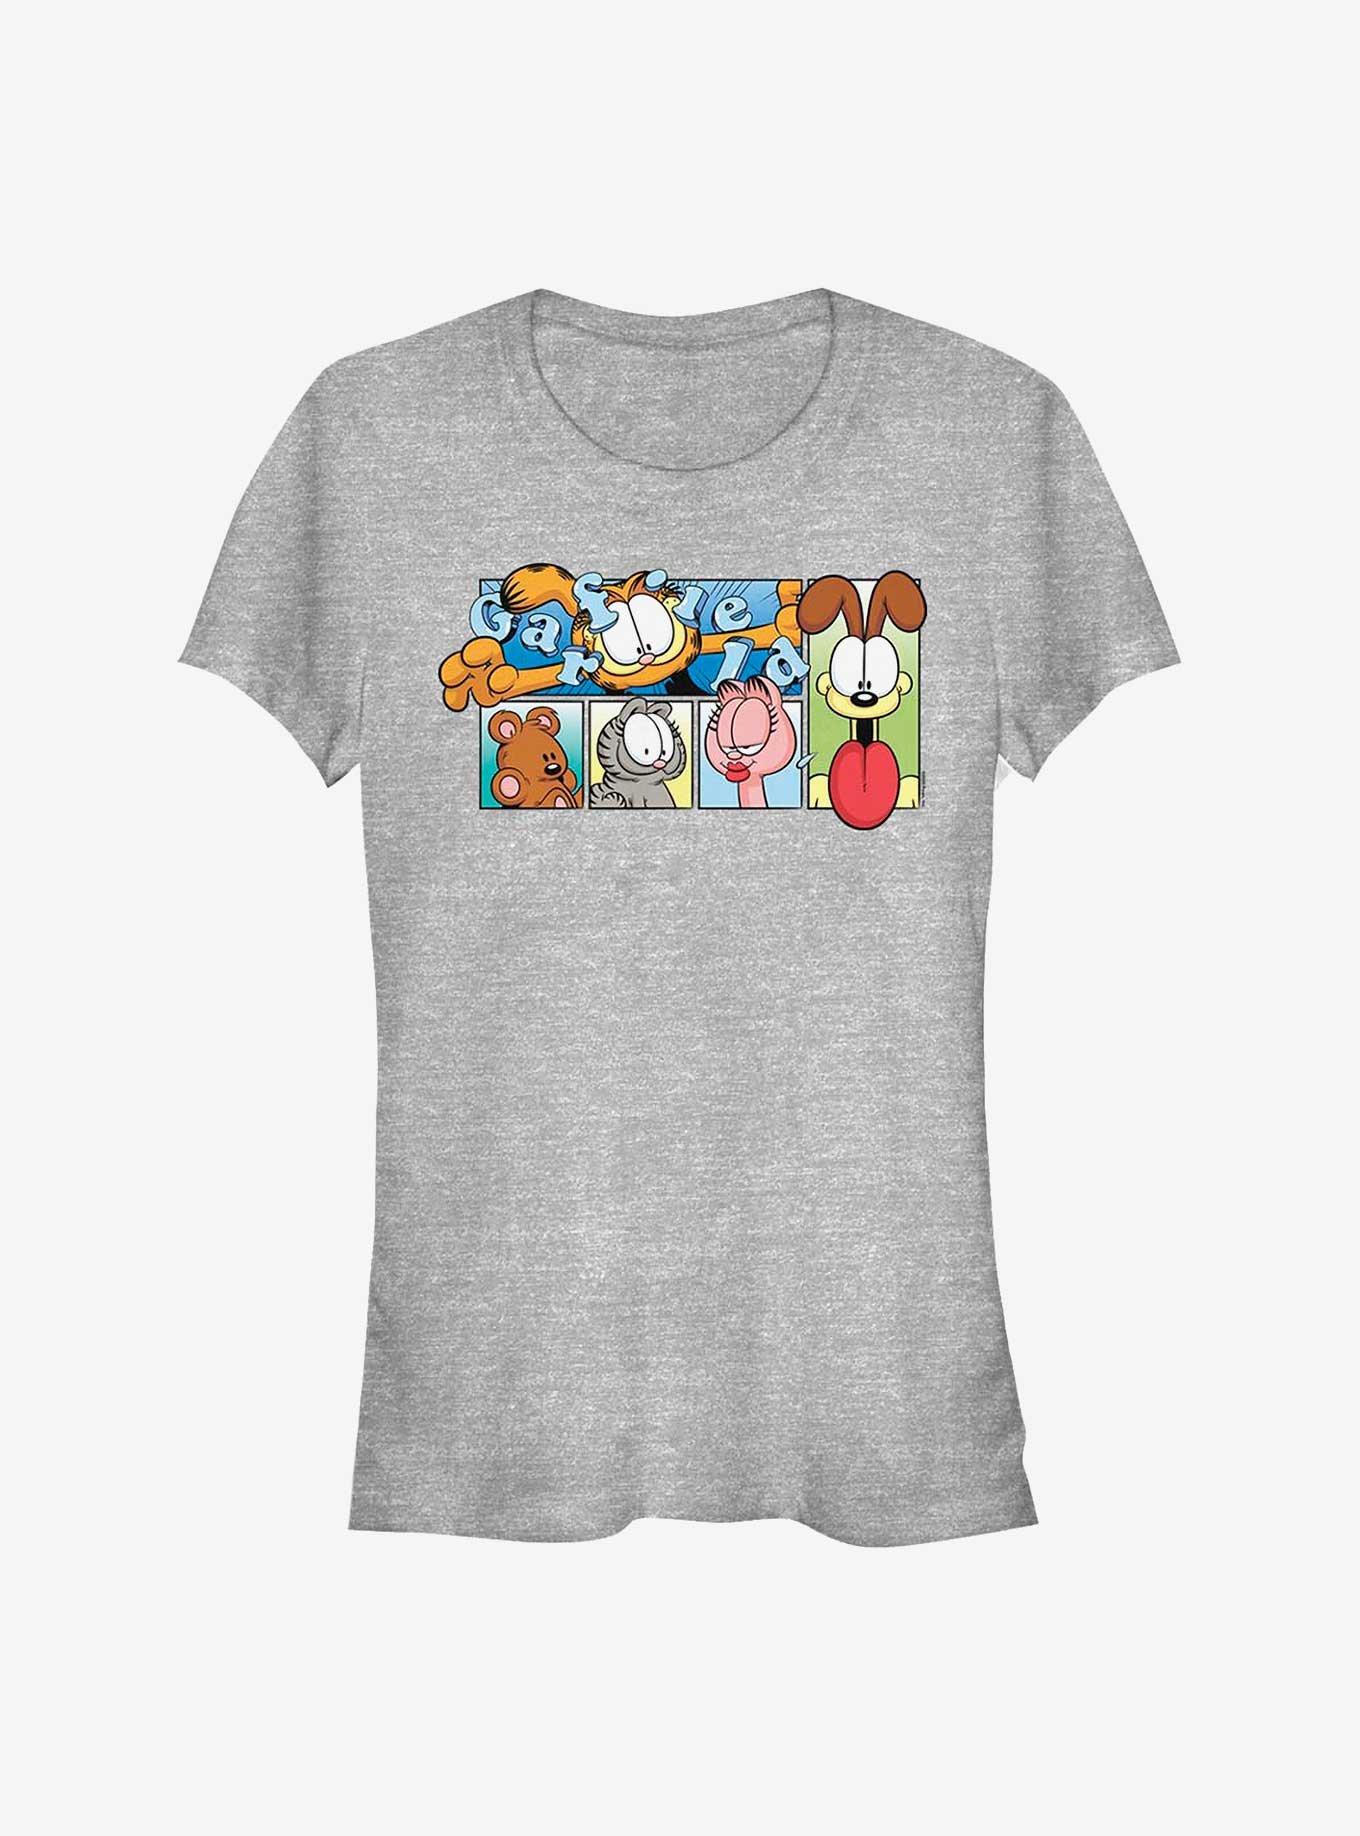 Garfield and Friends Girls T-Shirt